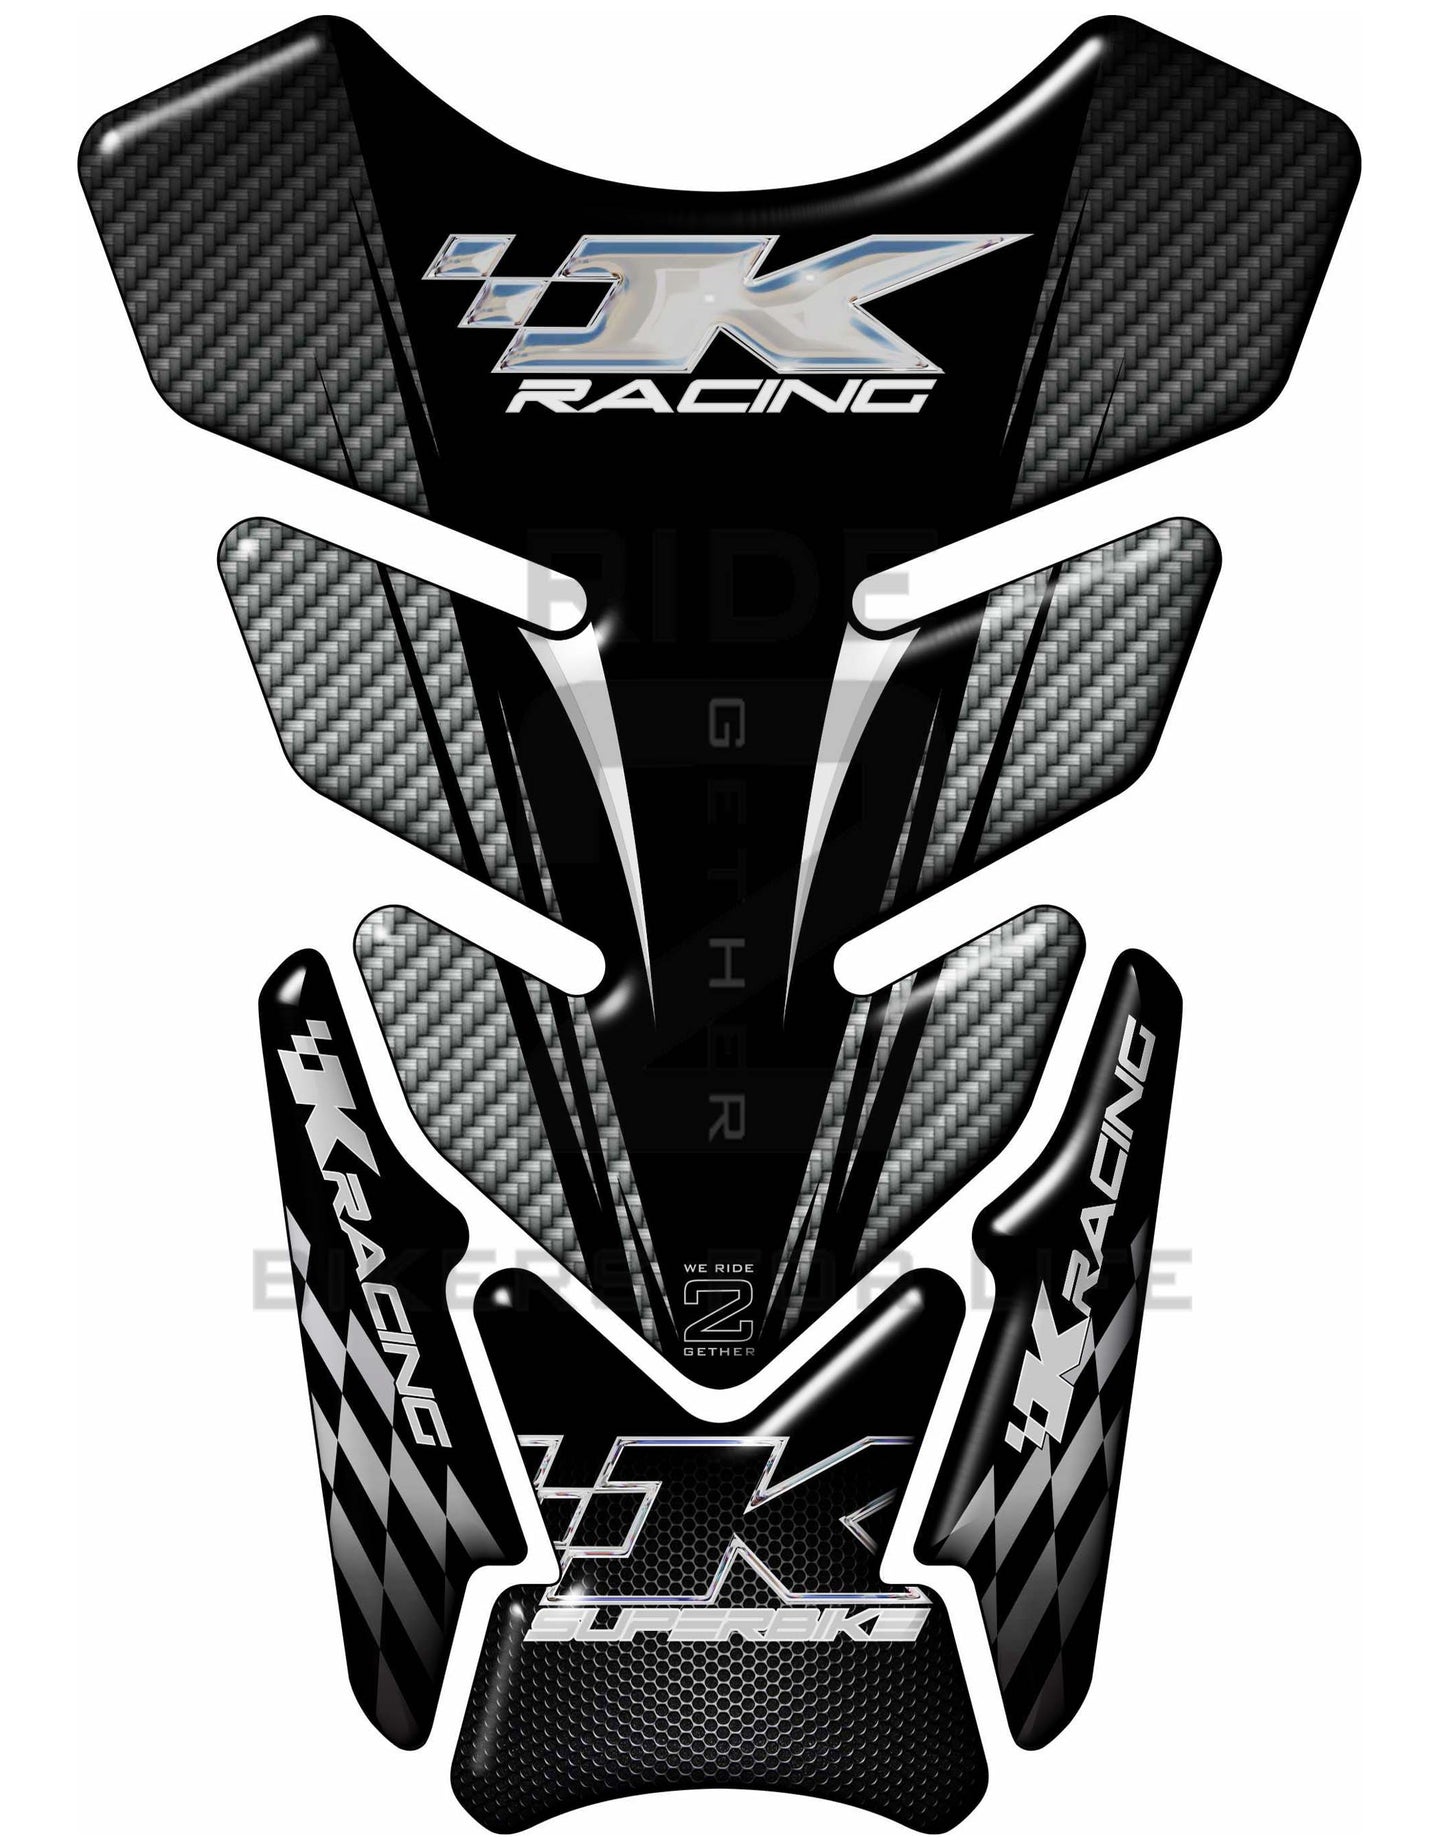 Kawasaki K Racing Black and Silver Carbon Fibre Tank Pad / Protector. Fits most motorcycle models.